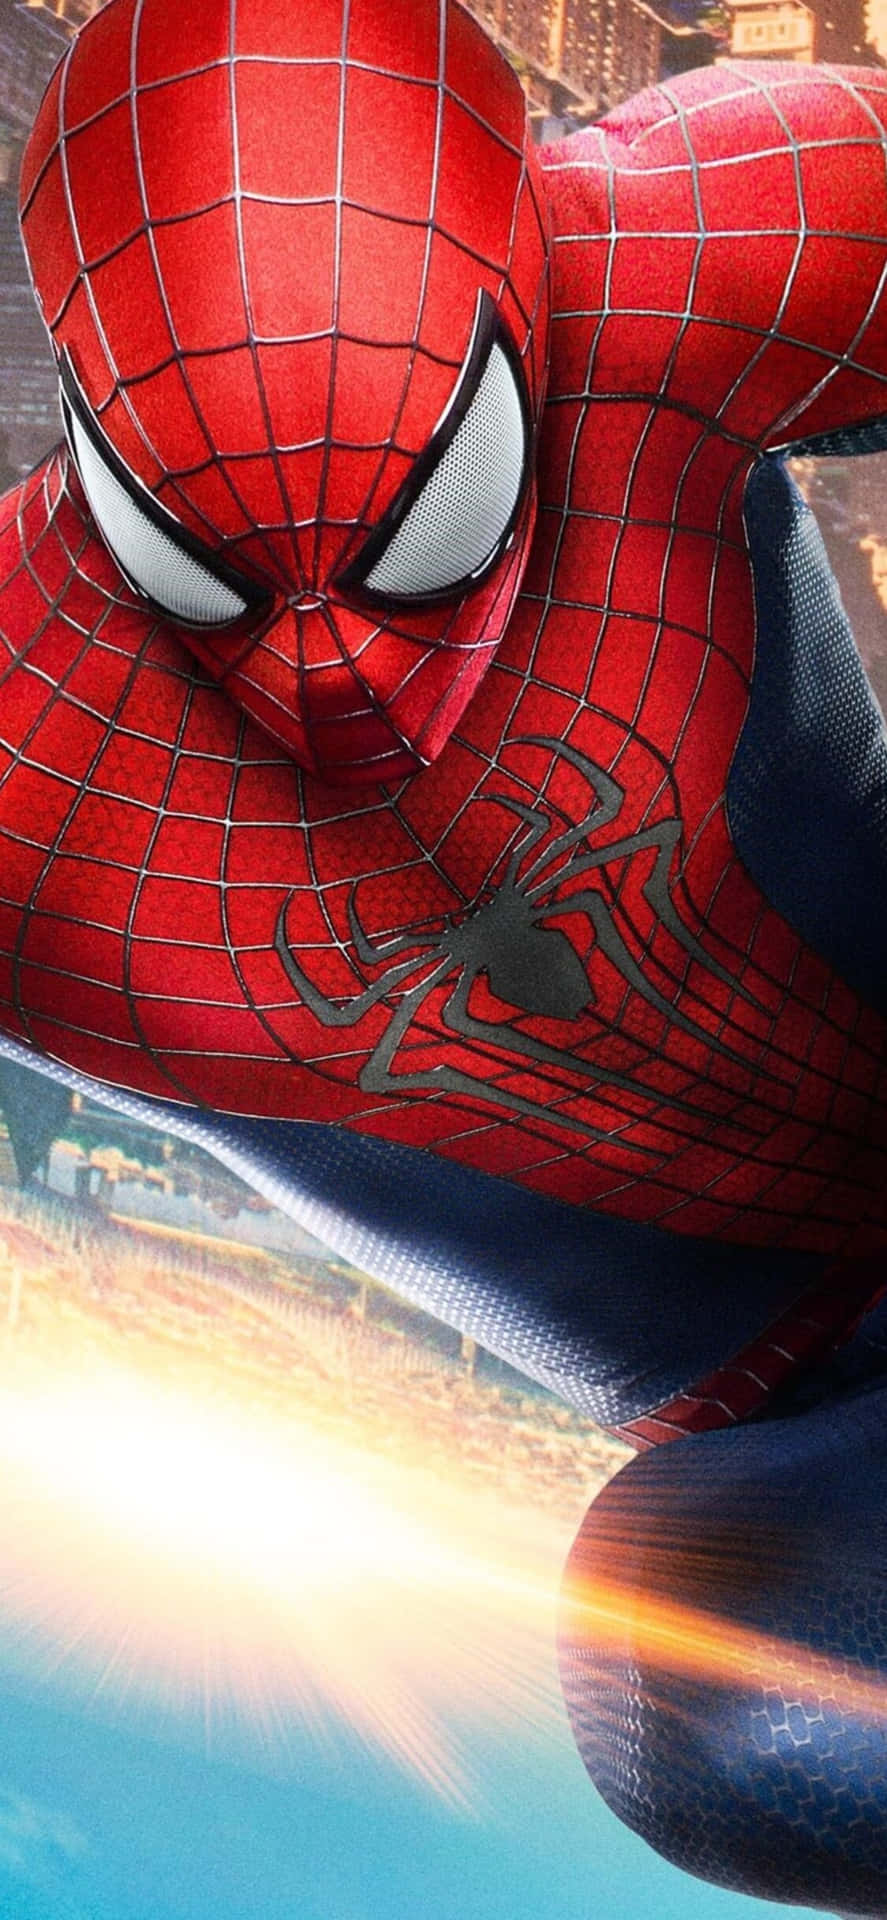 Preparatia Dondolare Per La Città Con L'increbile Spider Man Sul Tuo Nuovo Iphone! Sfondo